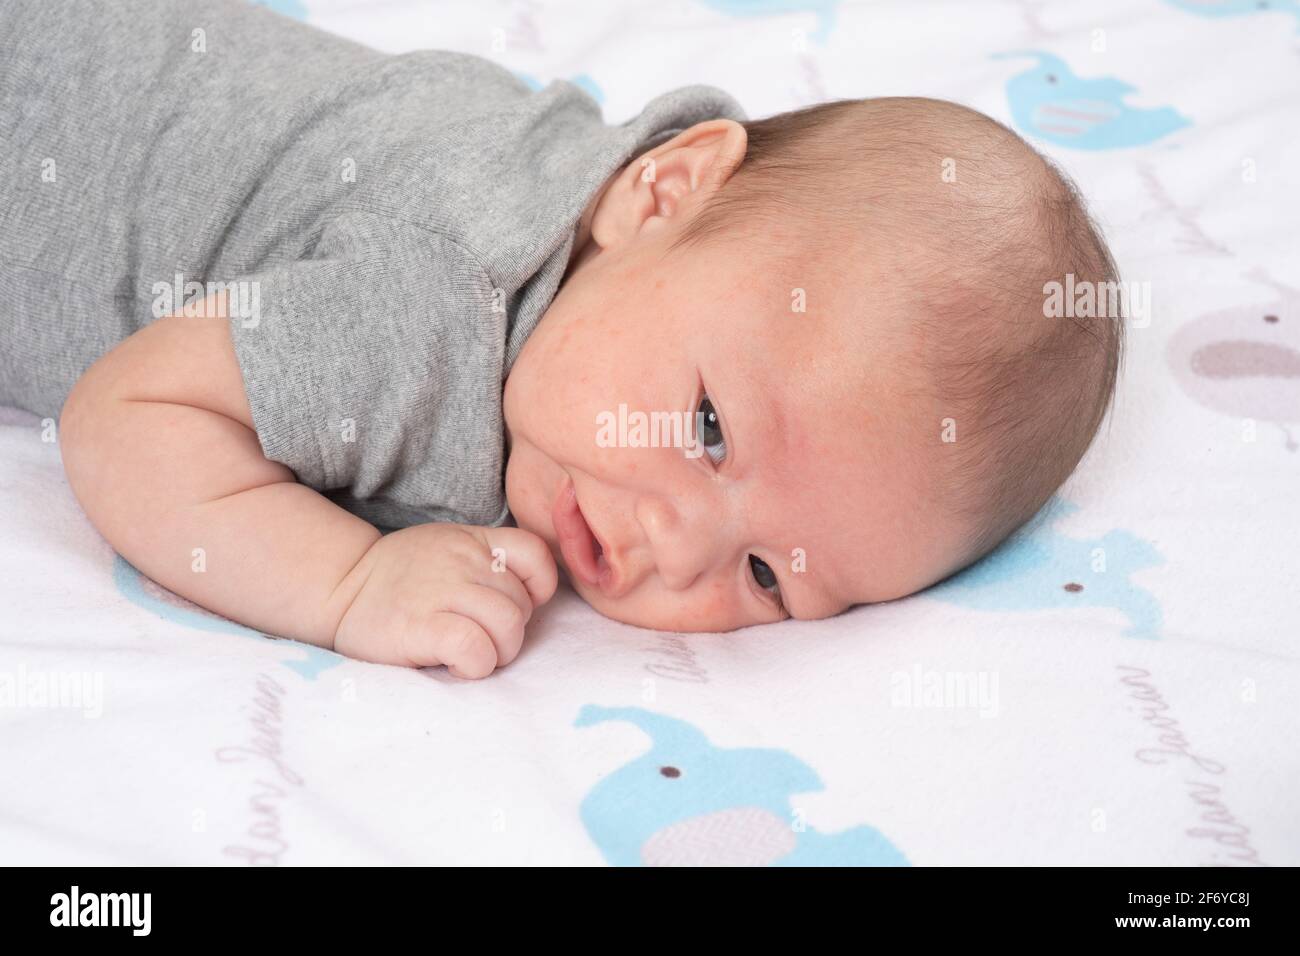 Neonato bambino 7 settimane di allarme primo piano sulla testa dello stomaco girato a lato Foto Stock